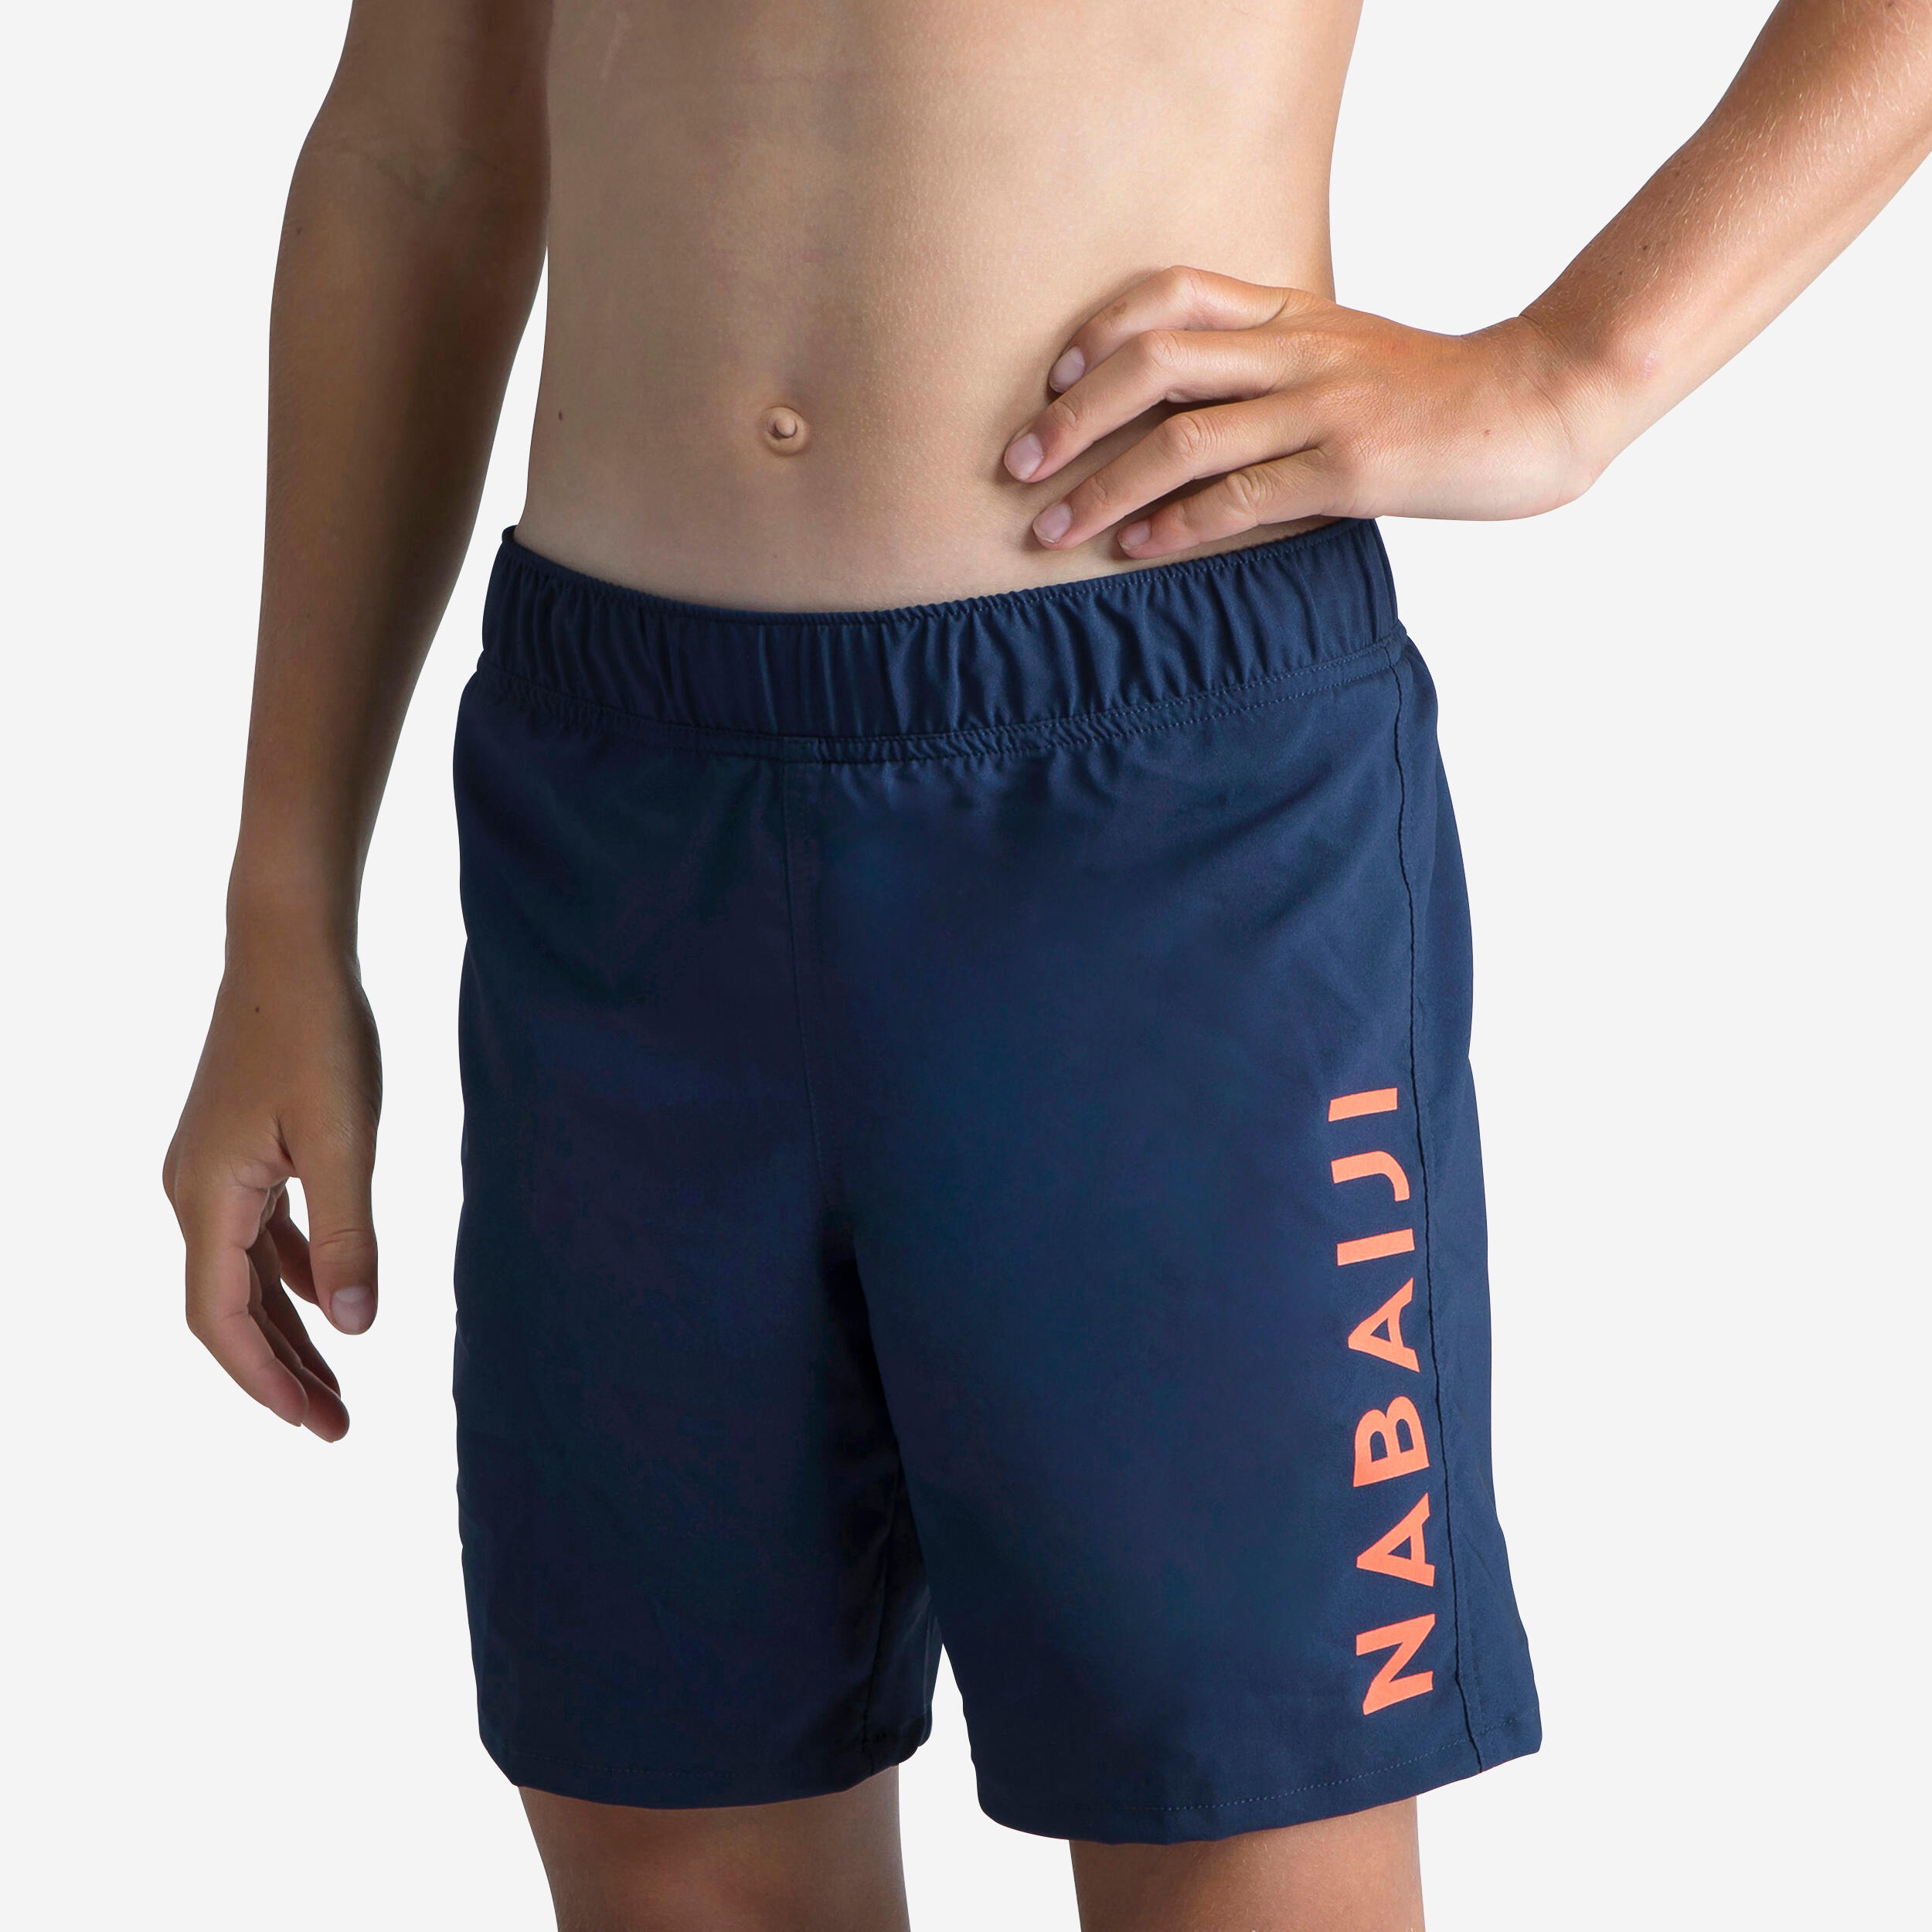 Boys' swimming swim shorts 100 basic - navy 1/4